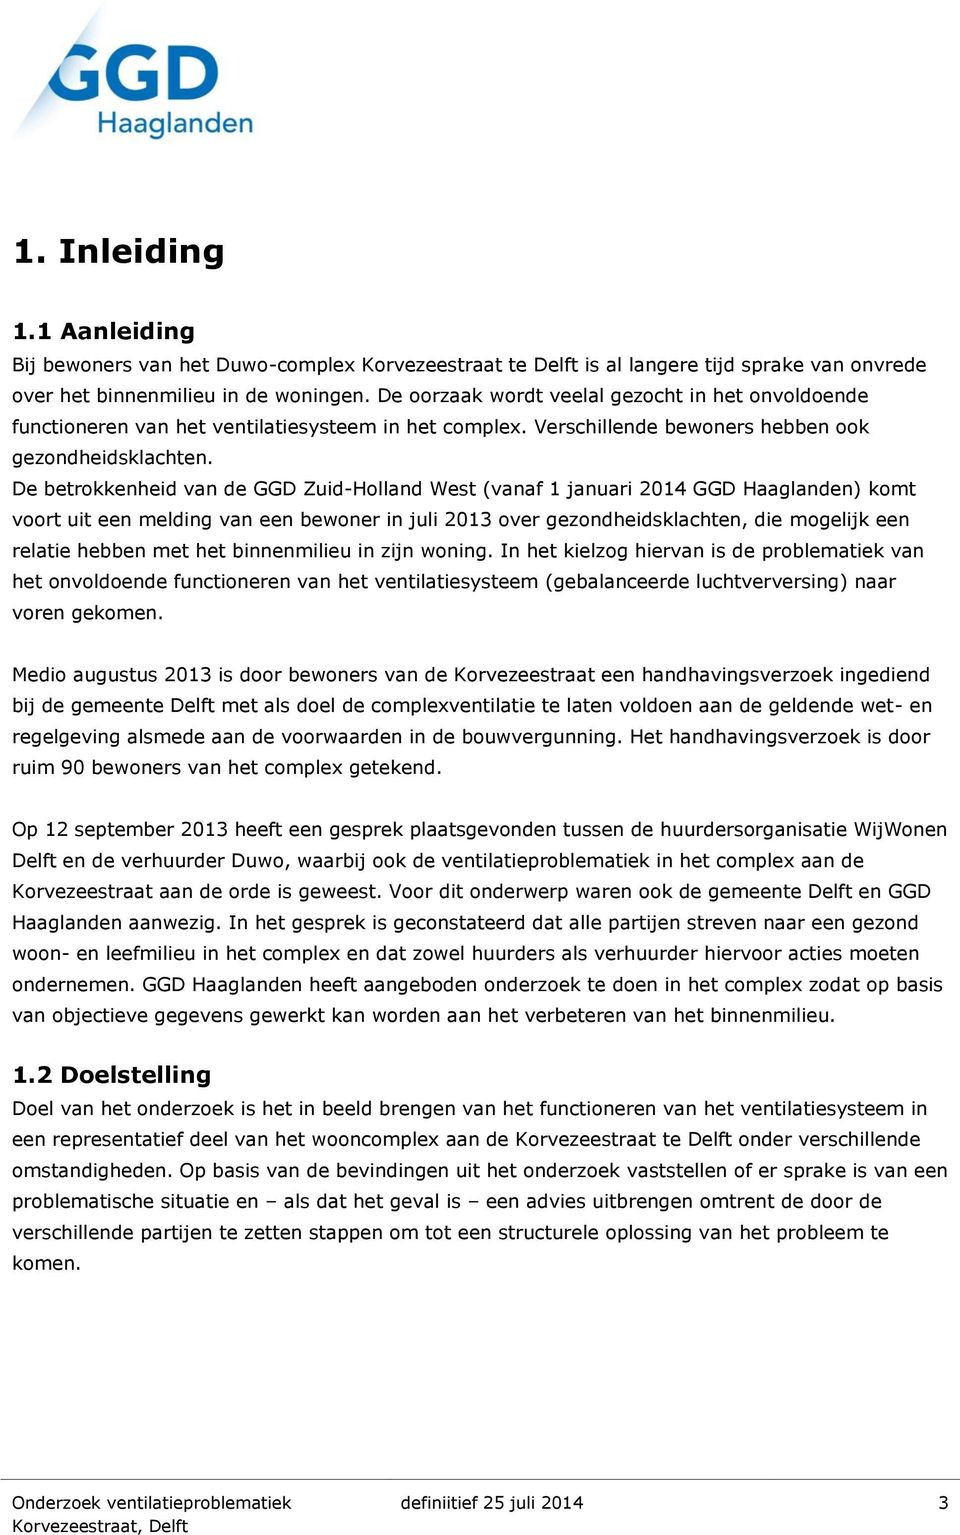 De betrokkenheid van de GGD Zuid-Holland West (vanaf 1 januari 2014 GGD Haaglanden) komt voort uit een melding van een bewoner in juli 2013 over gezondheidsklachten, die mogelijk een relatie hebben